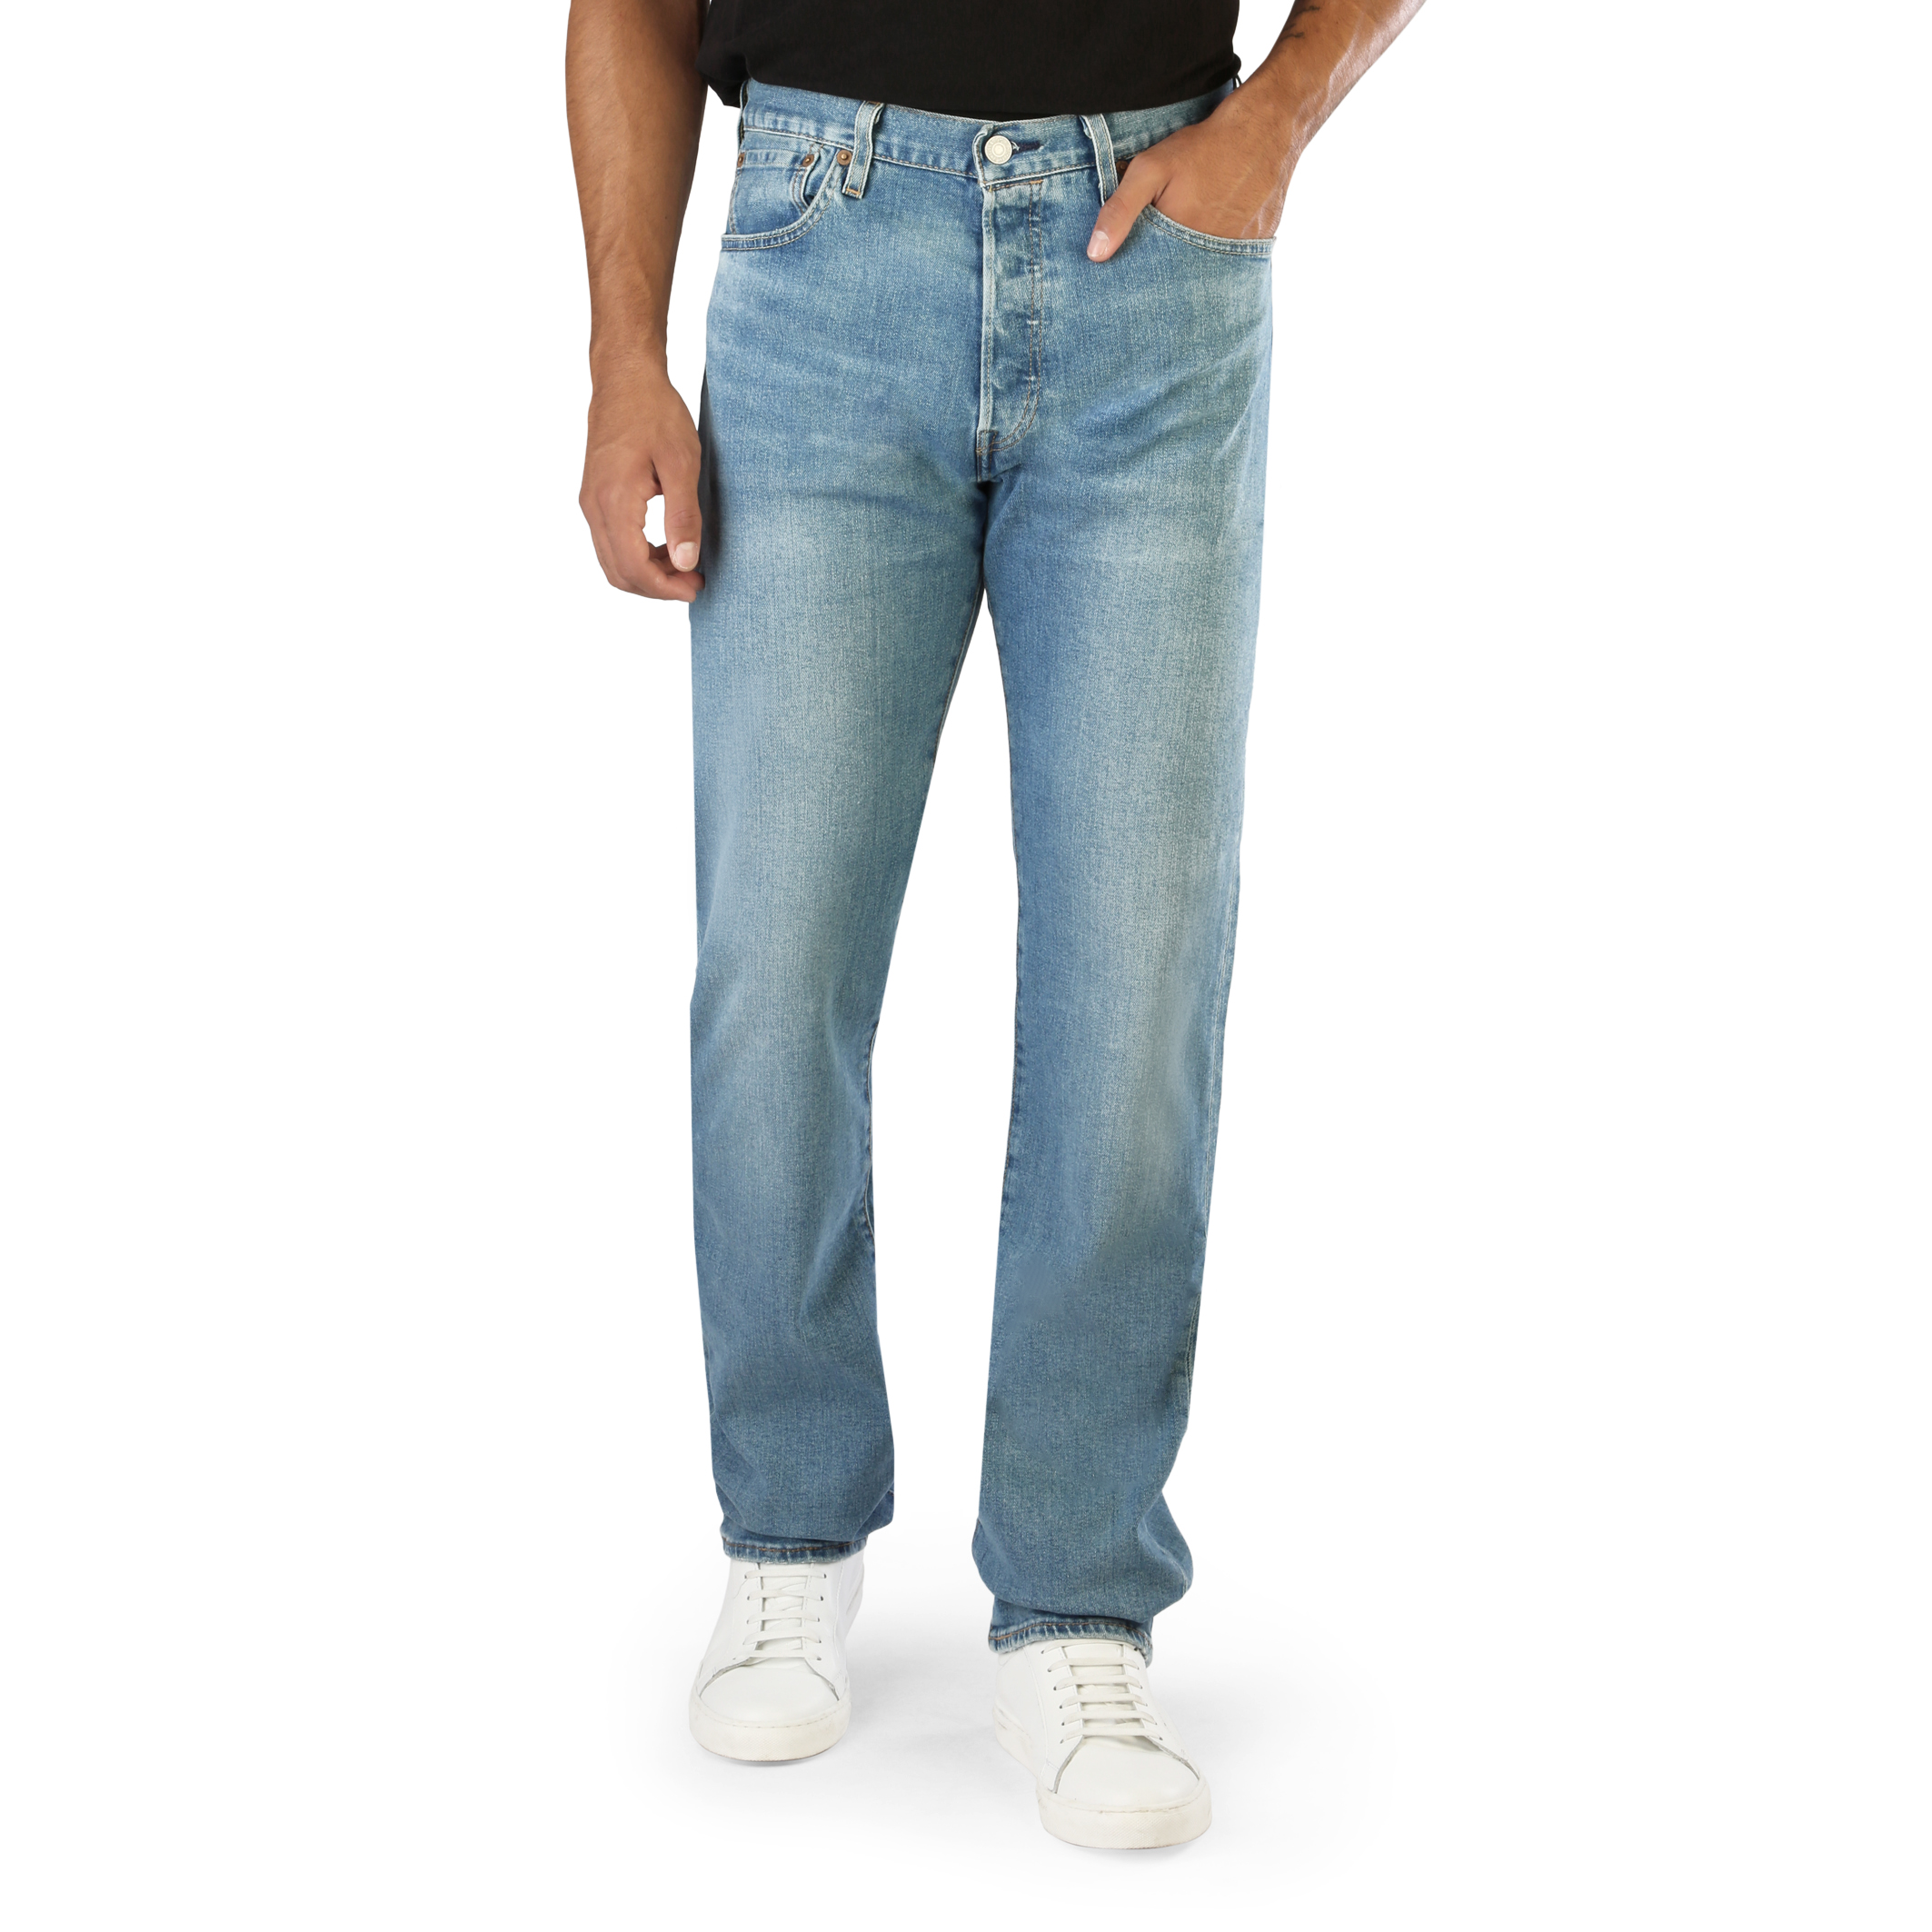 Levi's Blue Jeans for Men - 501